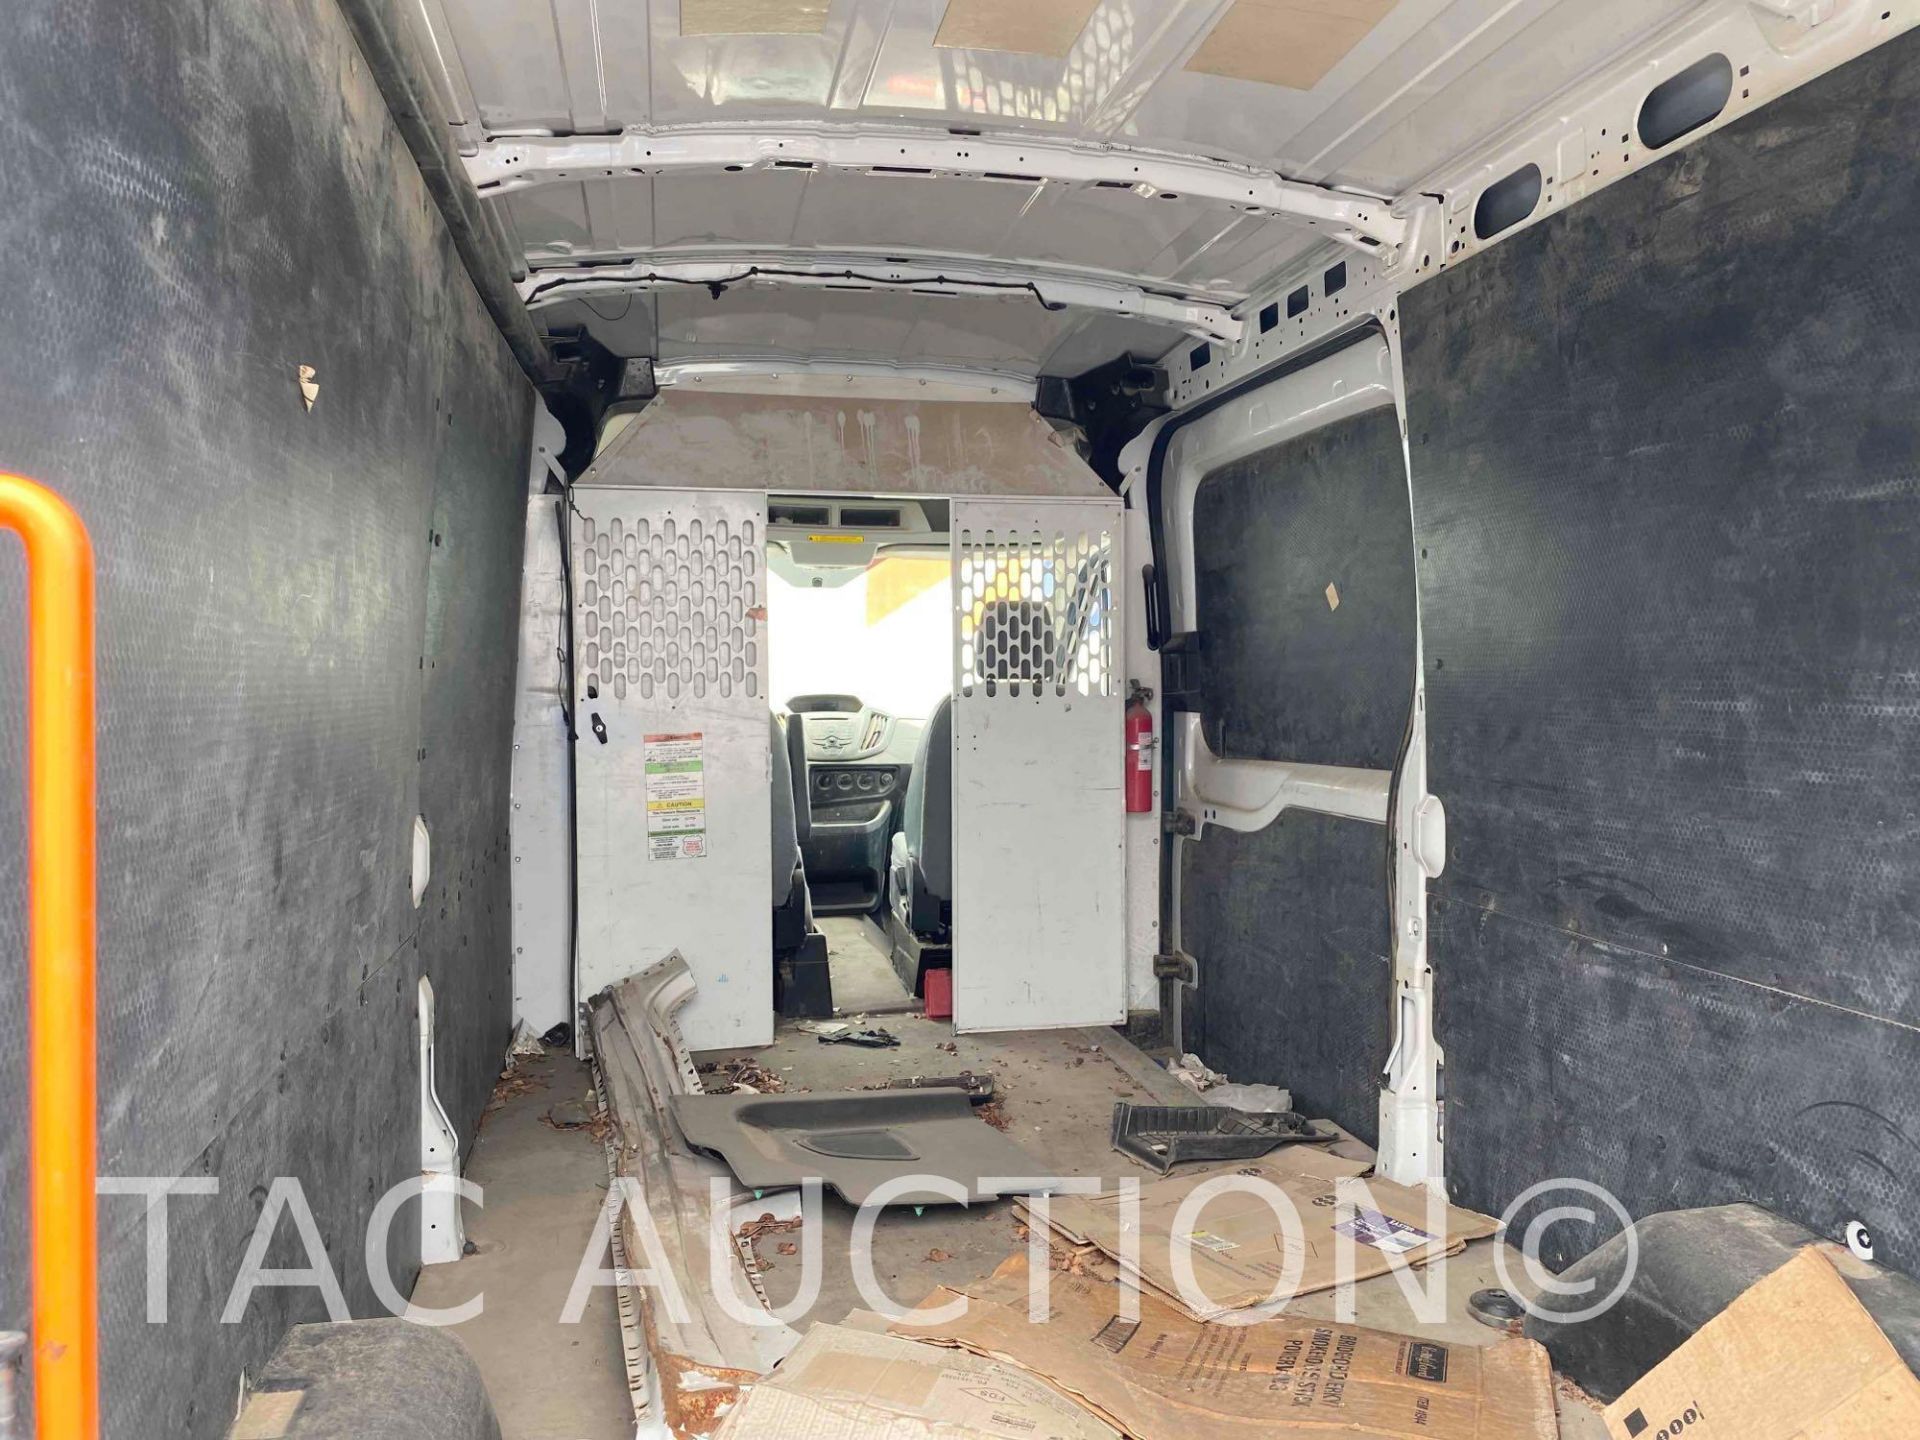 2019 Ford Transit 150 Cargo Van - Image 10 of 43